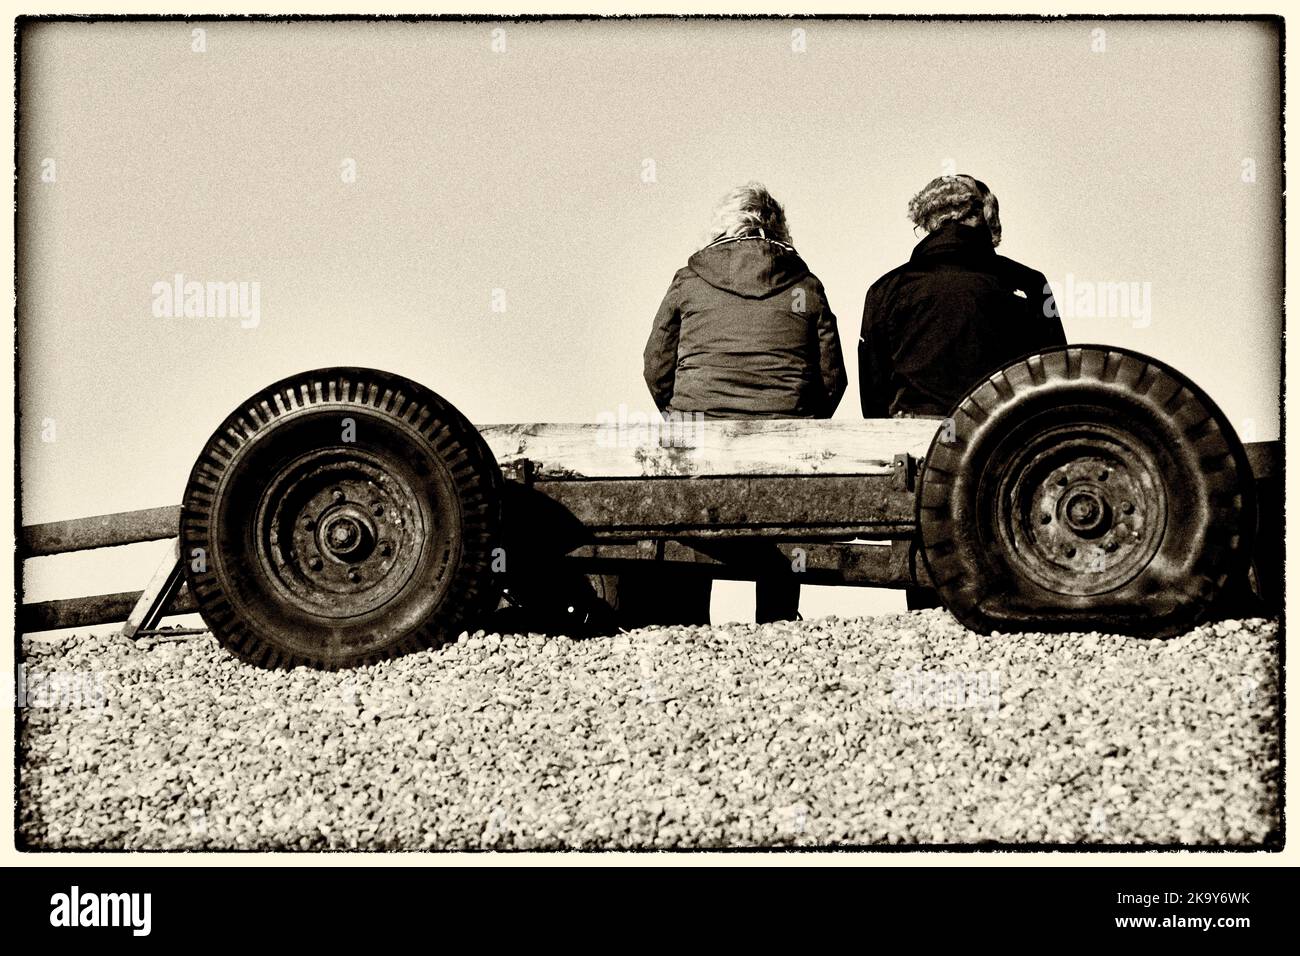 deux personnes assises sur une vieille remorque avec pneu à plat sur la plage de galets weybourne norfolk angleterre Banque D'Images